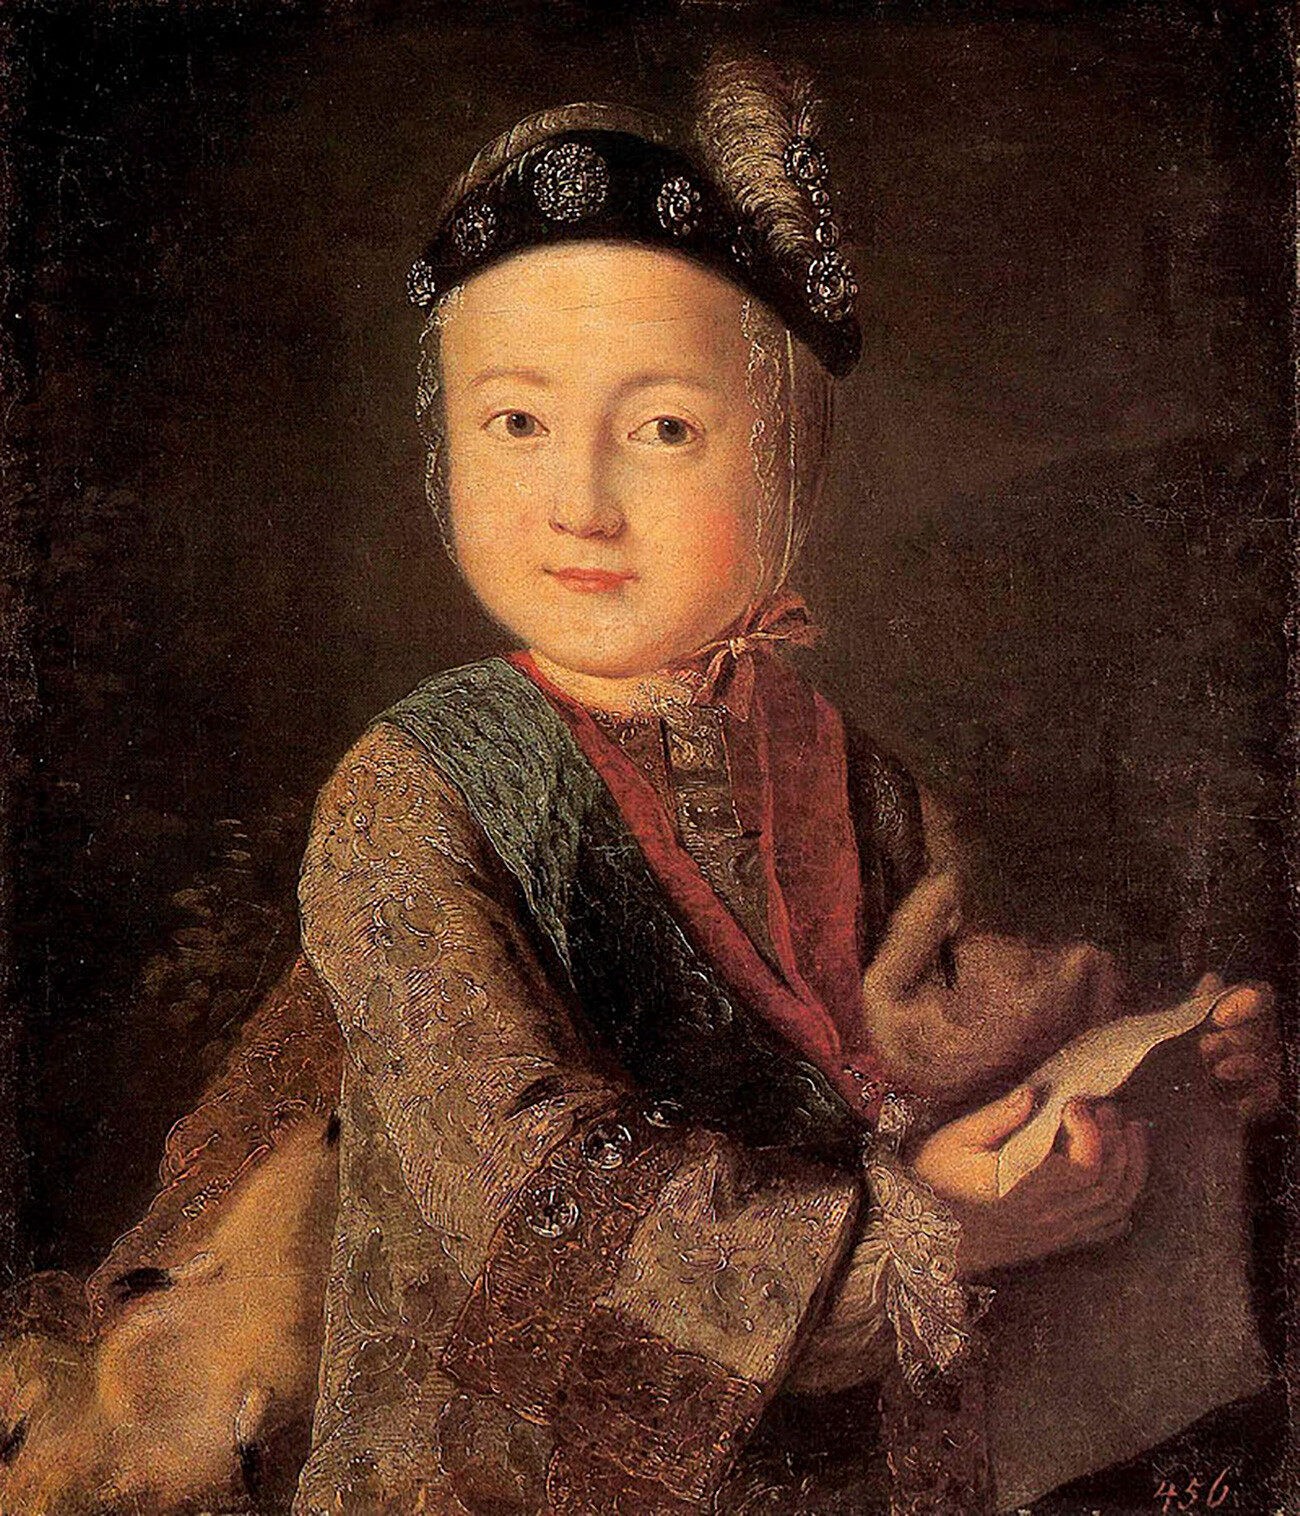 Retrato de Paulo Petrovitch quando criança. Artista desconhecido. 2ª metade do século 18. Museu de História Local de Kostromá.